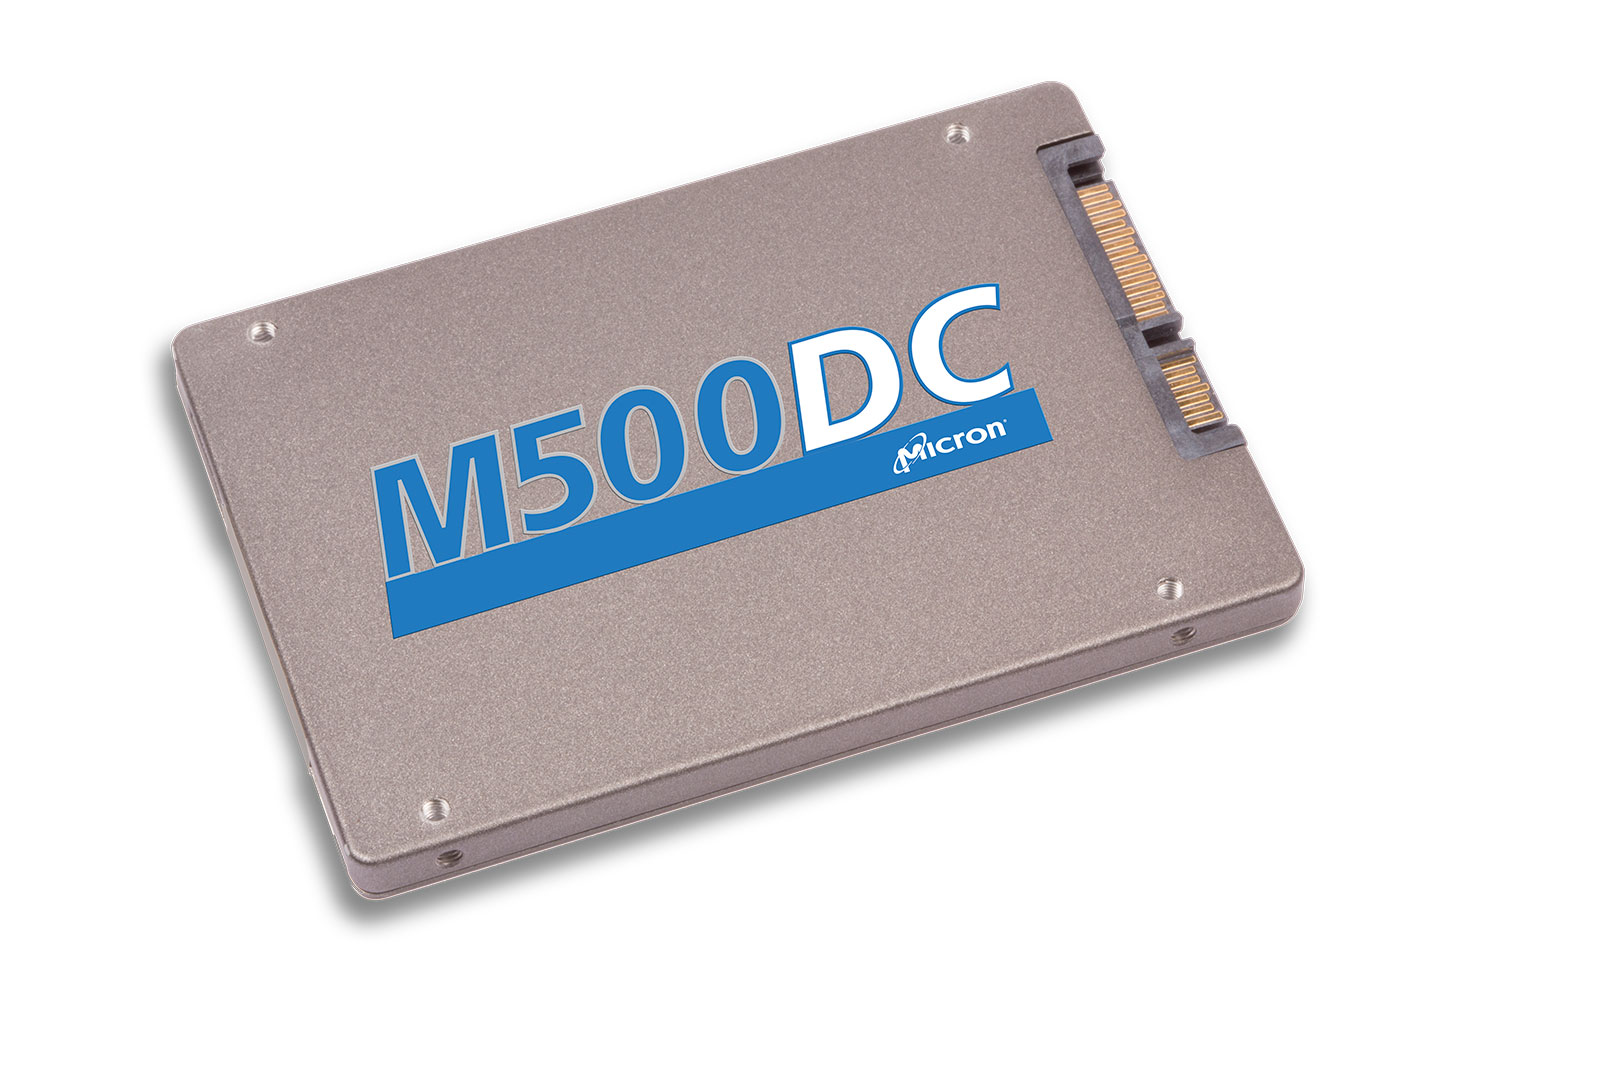 Immagine pubblicata in relazione al seguente contenuto: Micron annuncia la linea di SSD per enterprise M500DC | Nome immagine: news21089_Micron-SSD-M500DC_1.jpg